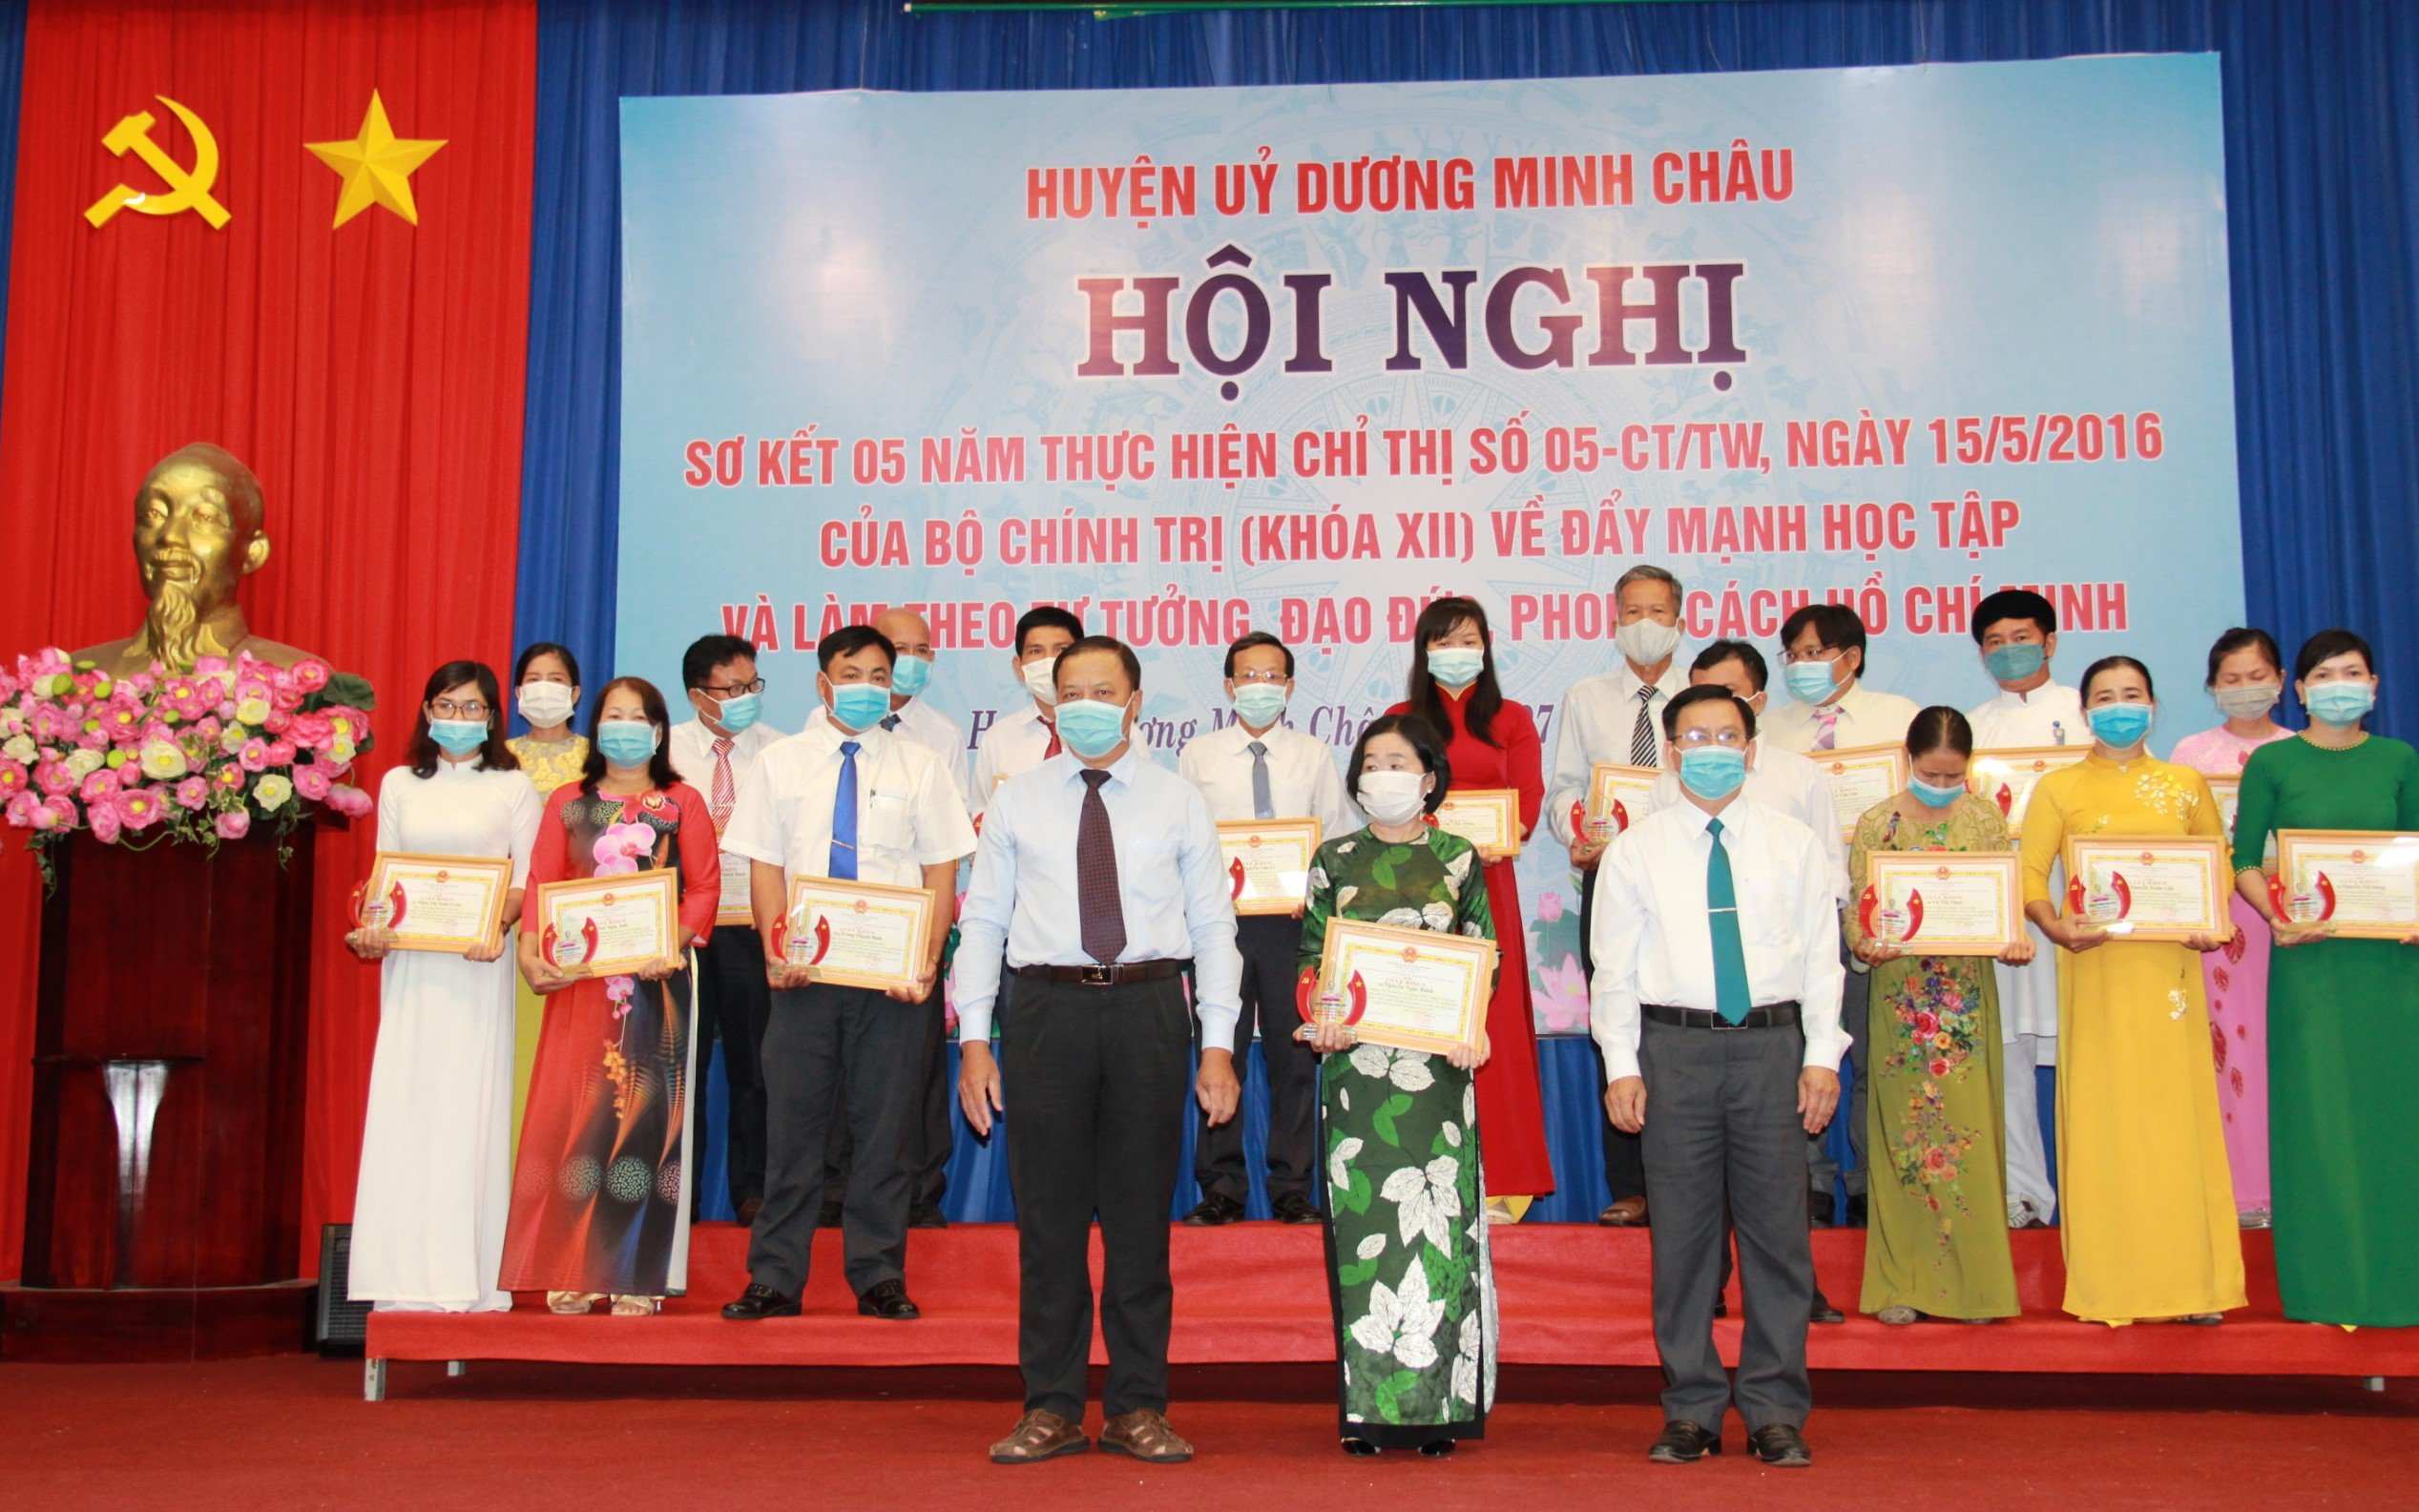 Huyện Dương Minh Châu:  Sơ kết 05 năm thực hiện Chỉ thị số 05 của Bộ Chính trị, khóa XII